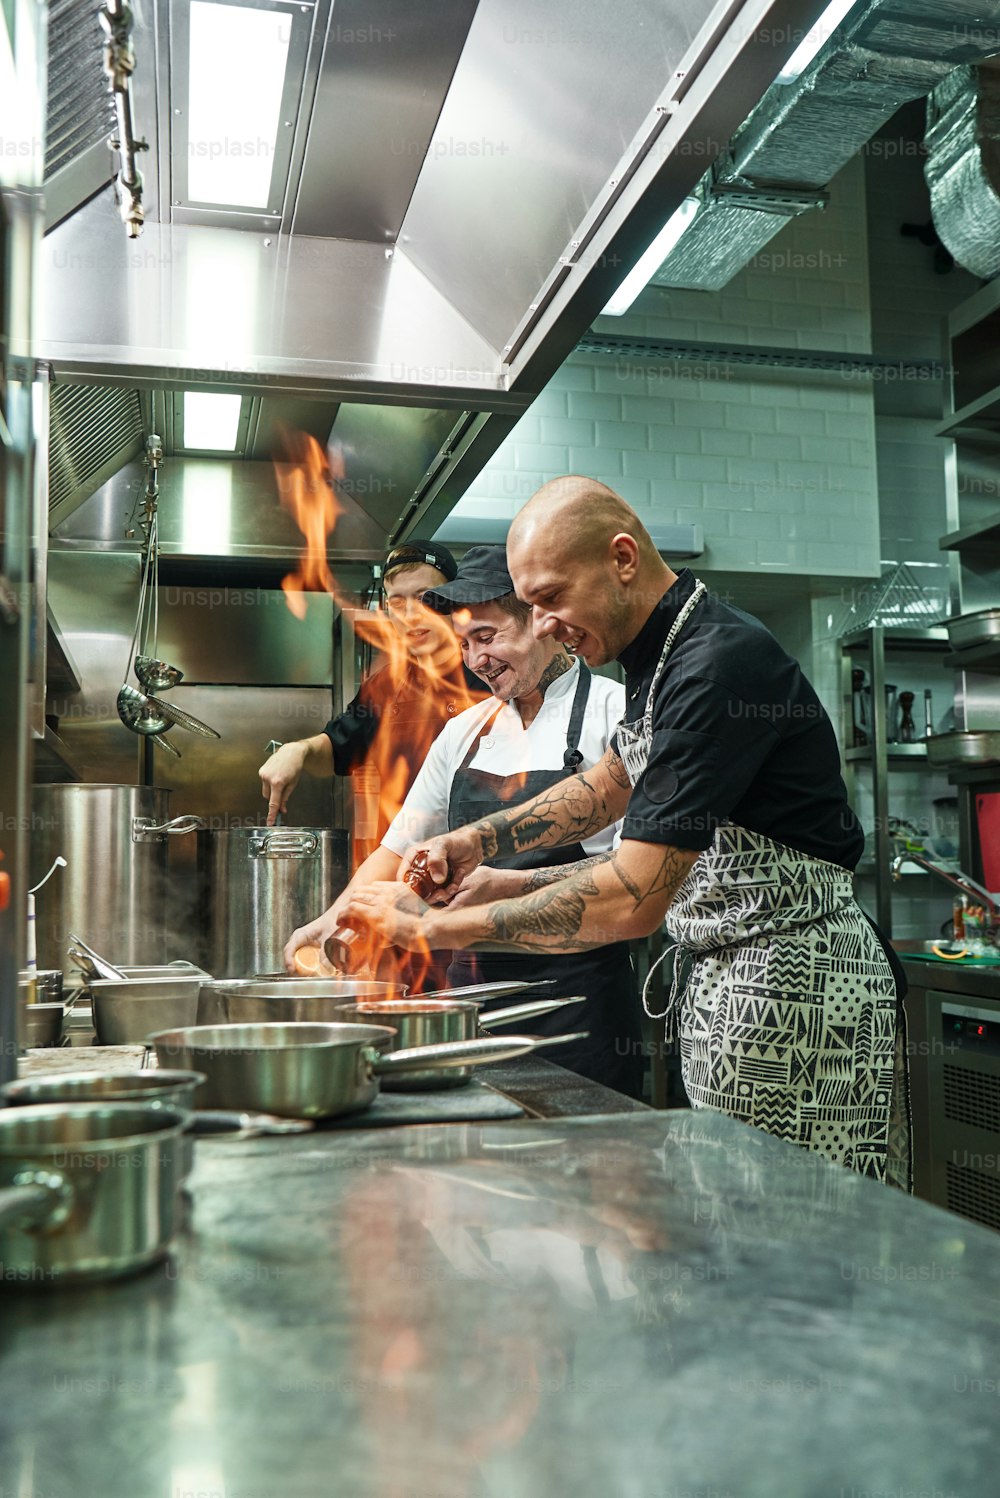 매우 뜨거운 쾌활한 요리사와 두 명의 조수가 레스토랑의 부엌에서 열린 불로 스토브에서 요리를 준비하고 있습니다. 플람베. 요리 개념